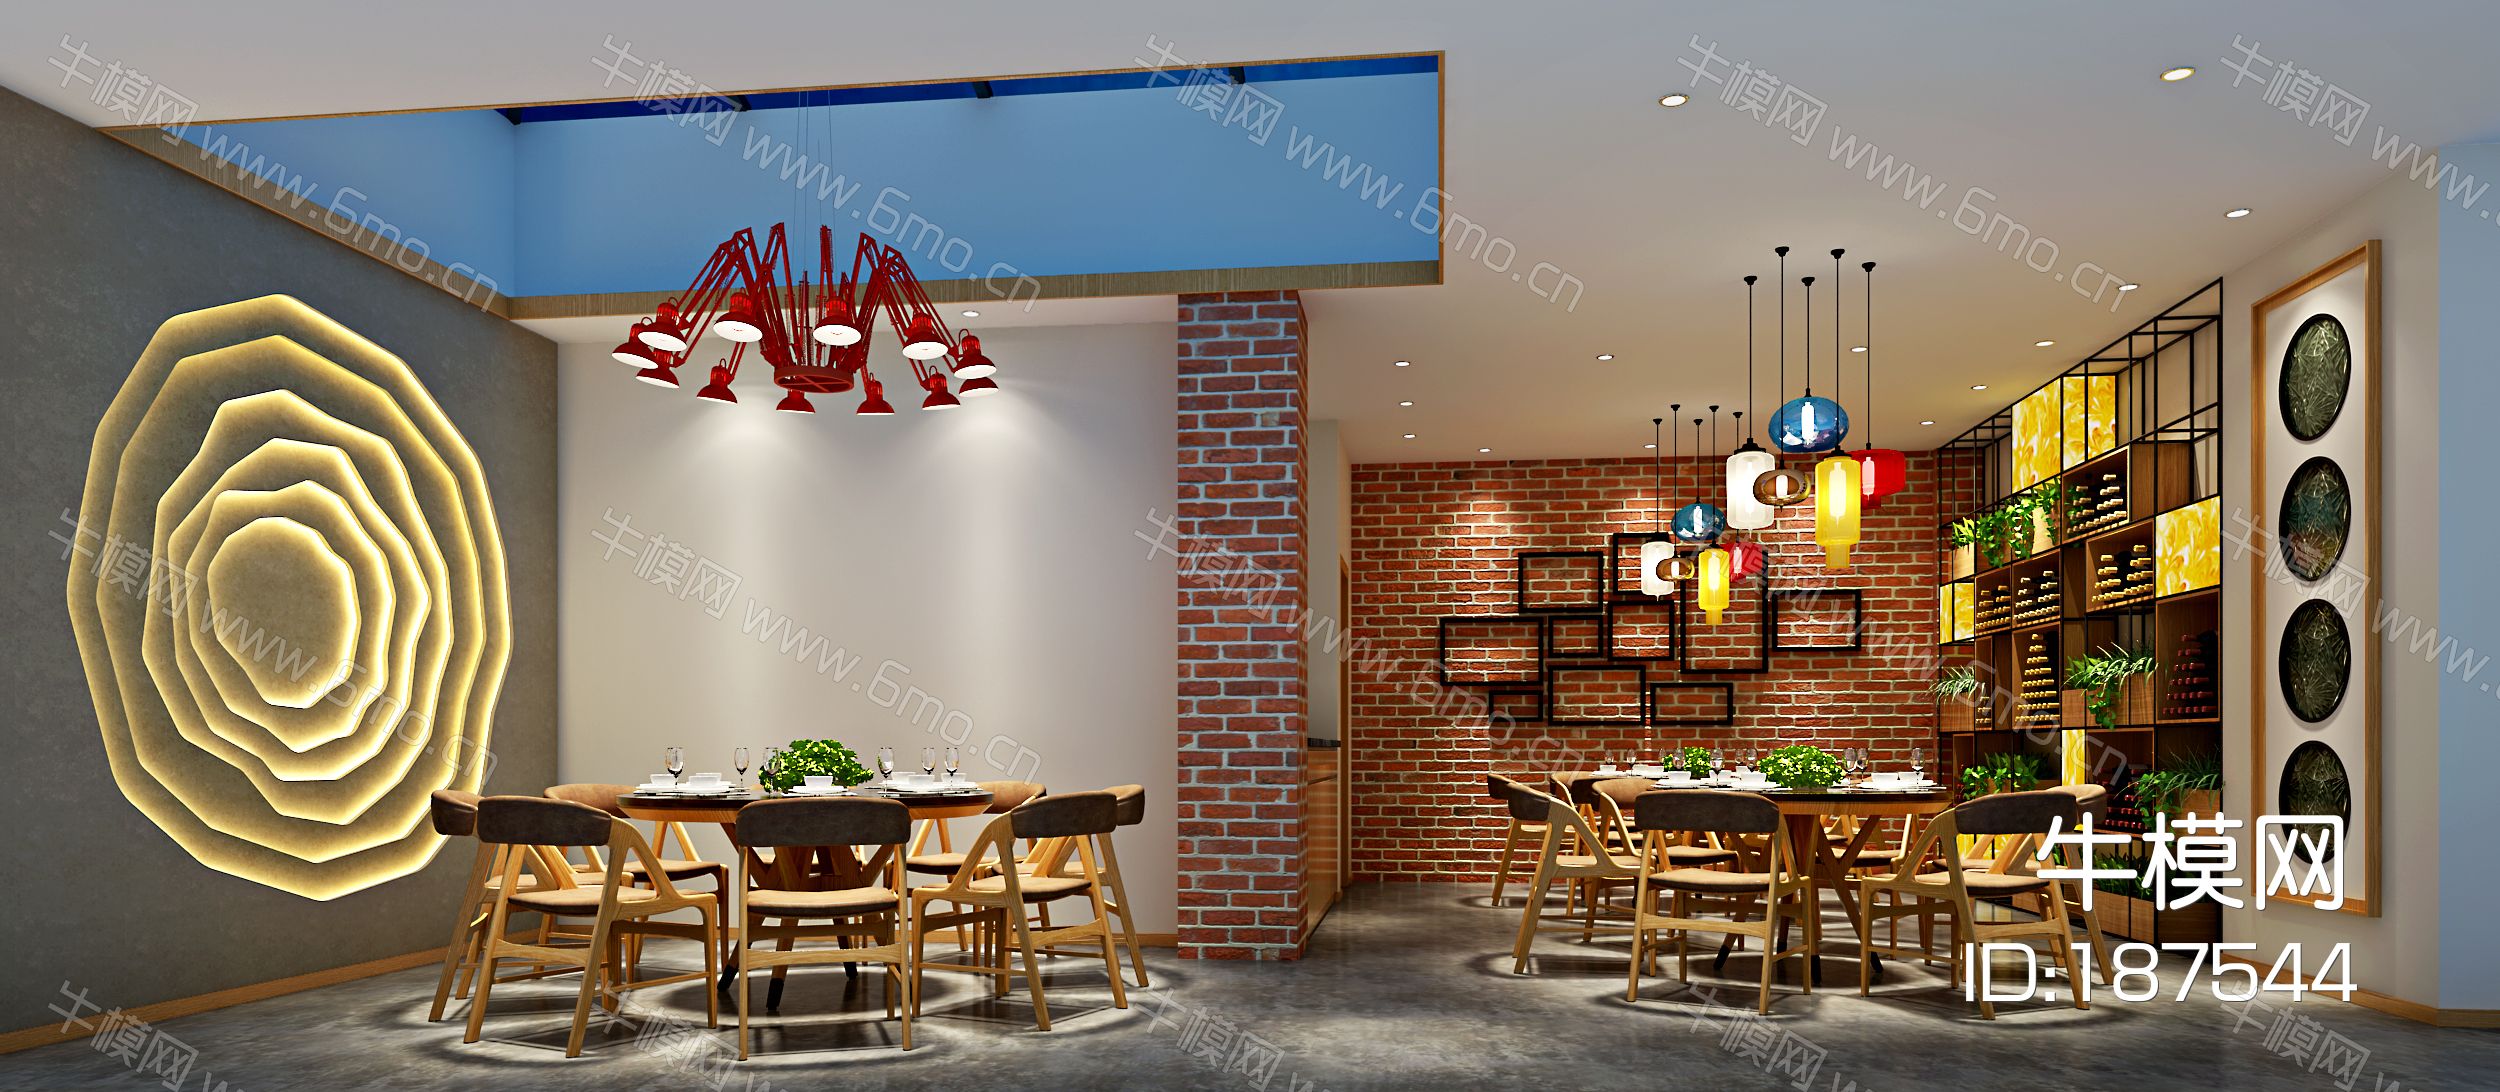 工业风loft餐厅 餐饮空间 餐桌椅 吊灯 墙饰 挂画